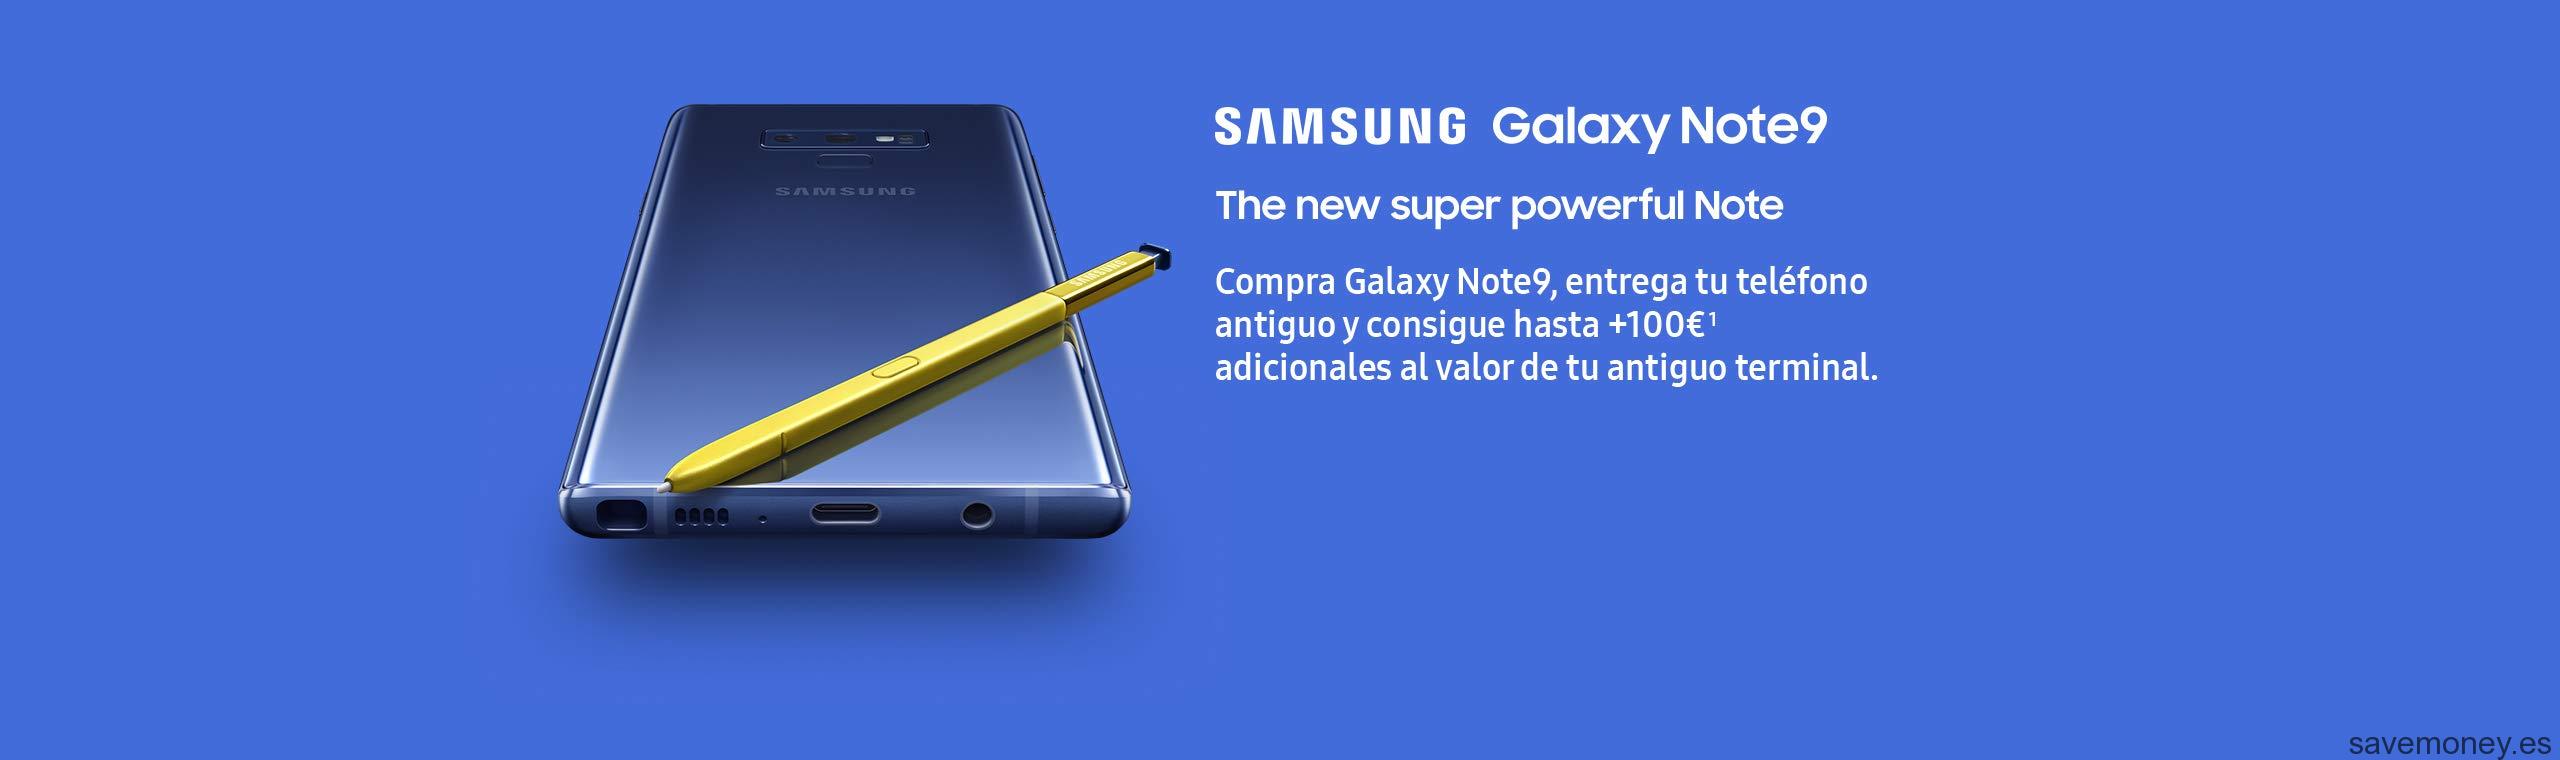 Galaxy Note 9: Promoción Amazon